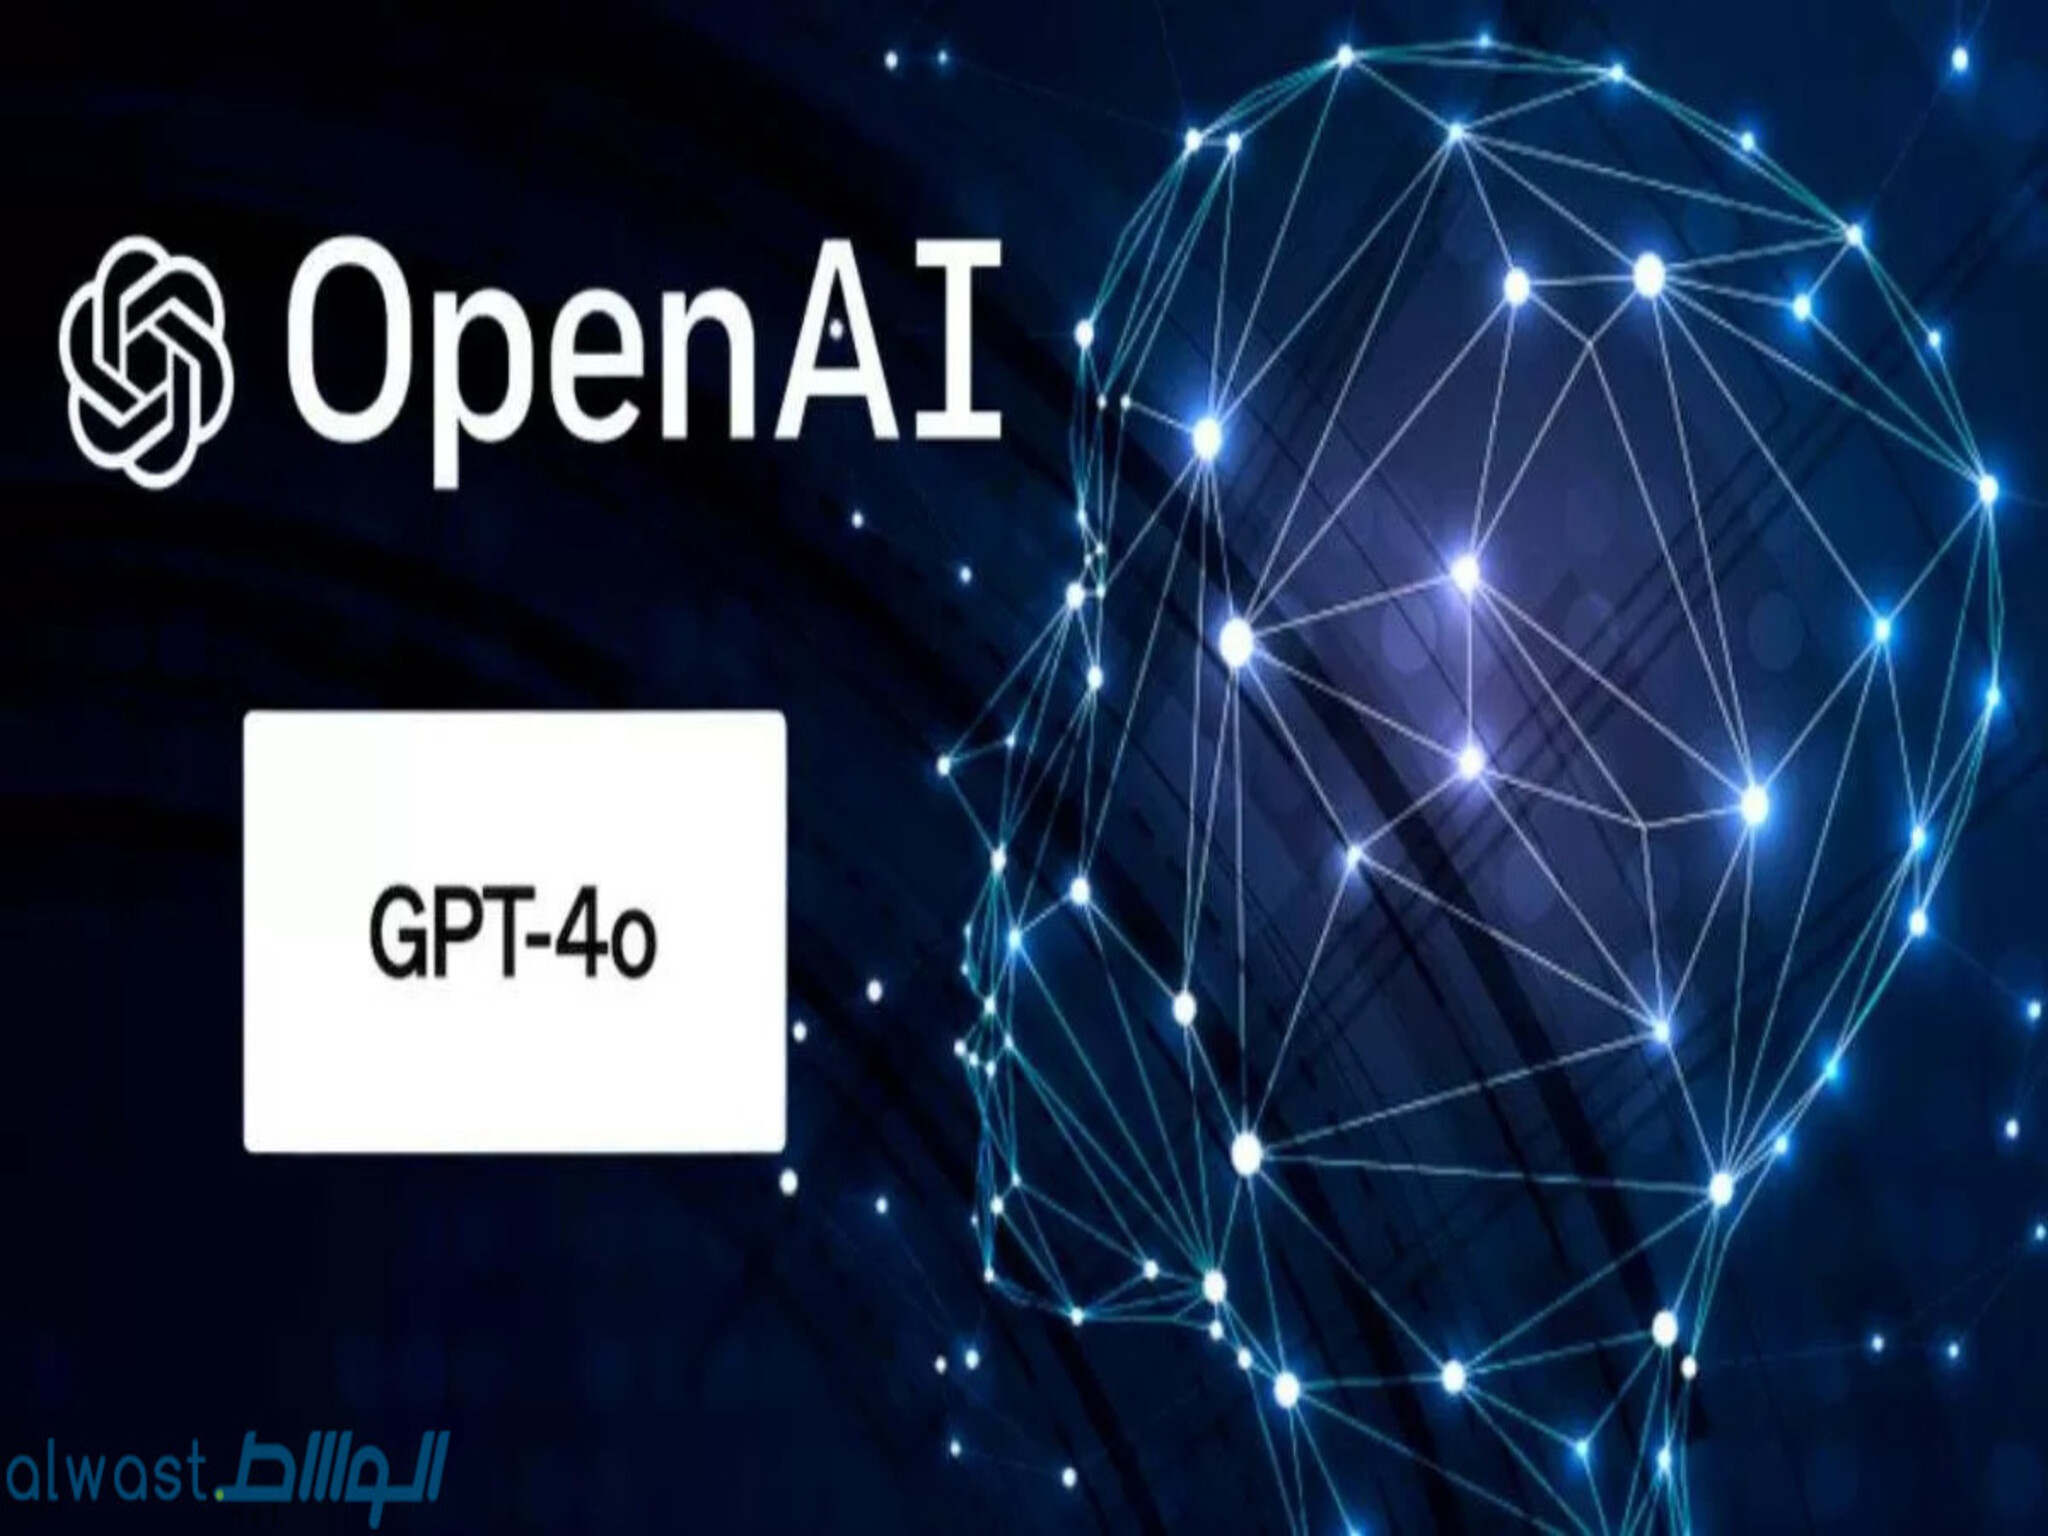 OpenAI introduces "GPT-4o" a new AI model